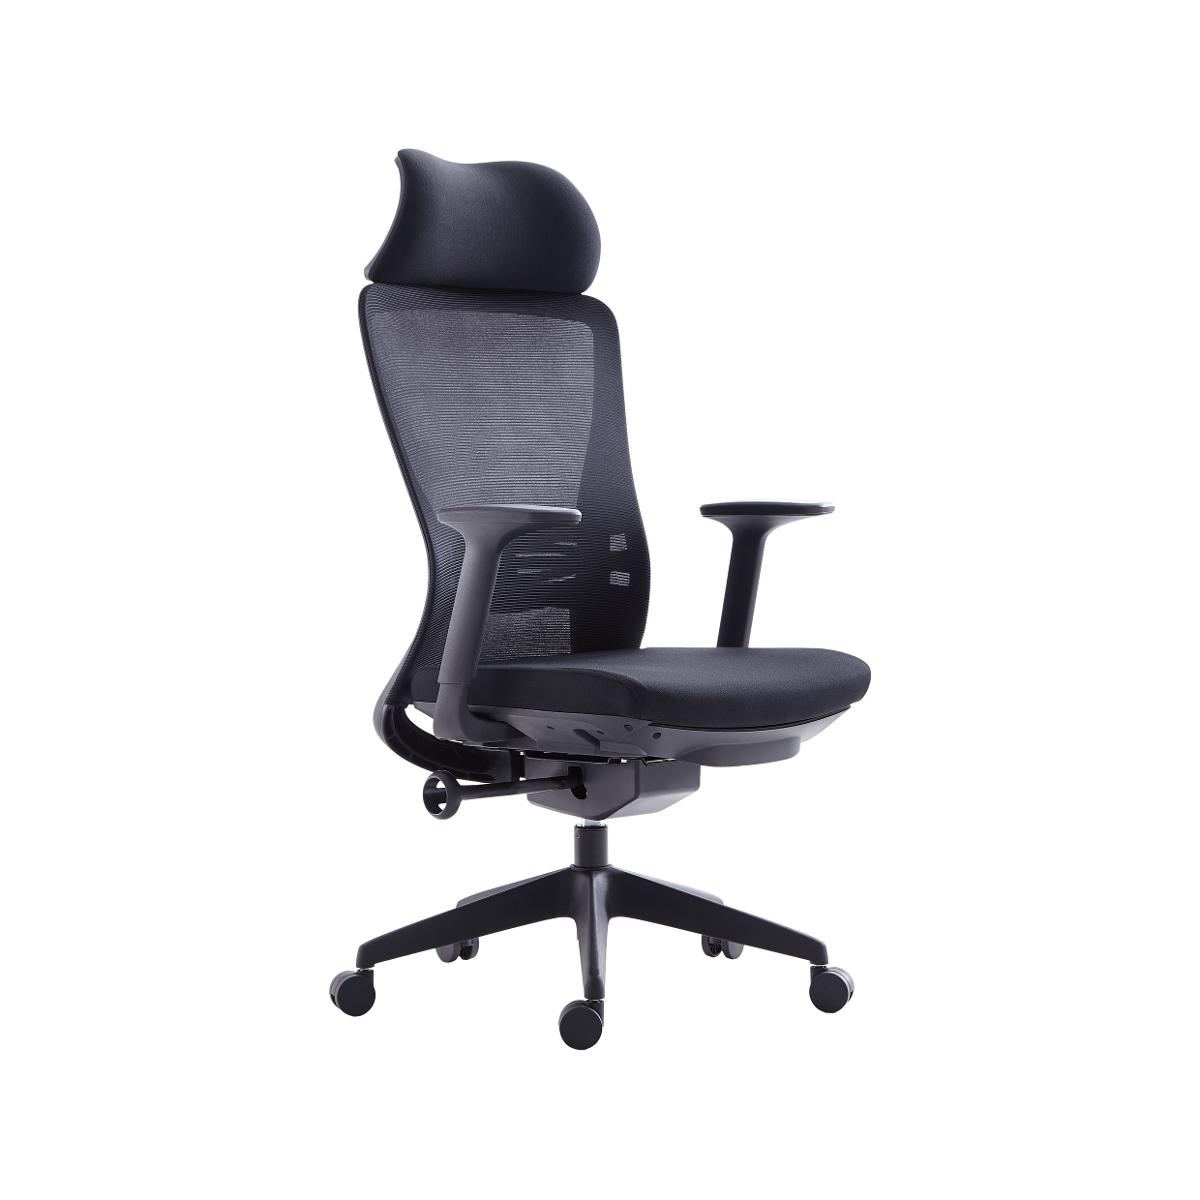 Super Chair เก้าอี้ผู้บริหาร รุ่น M123-1  H Black